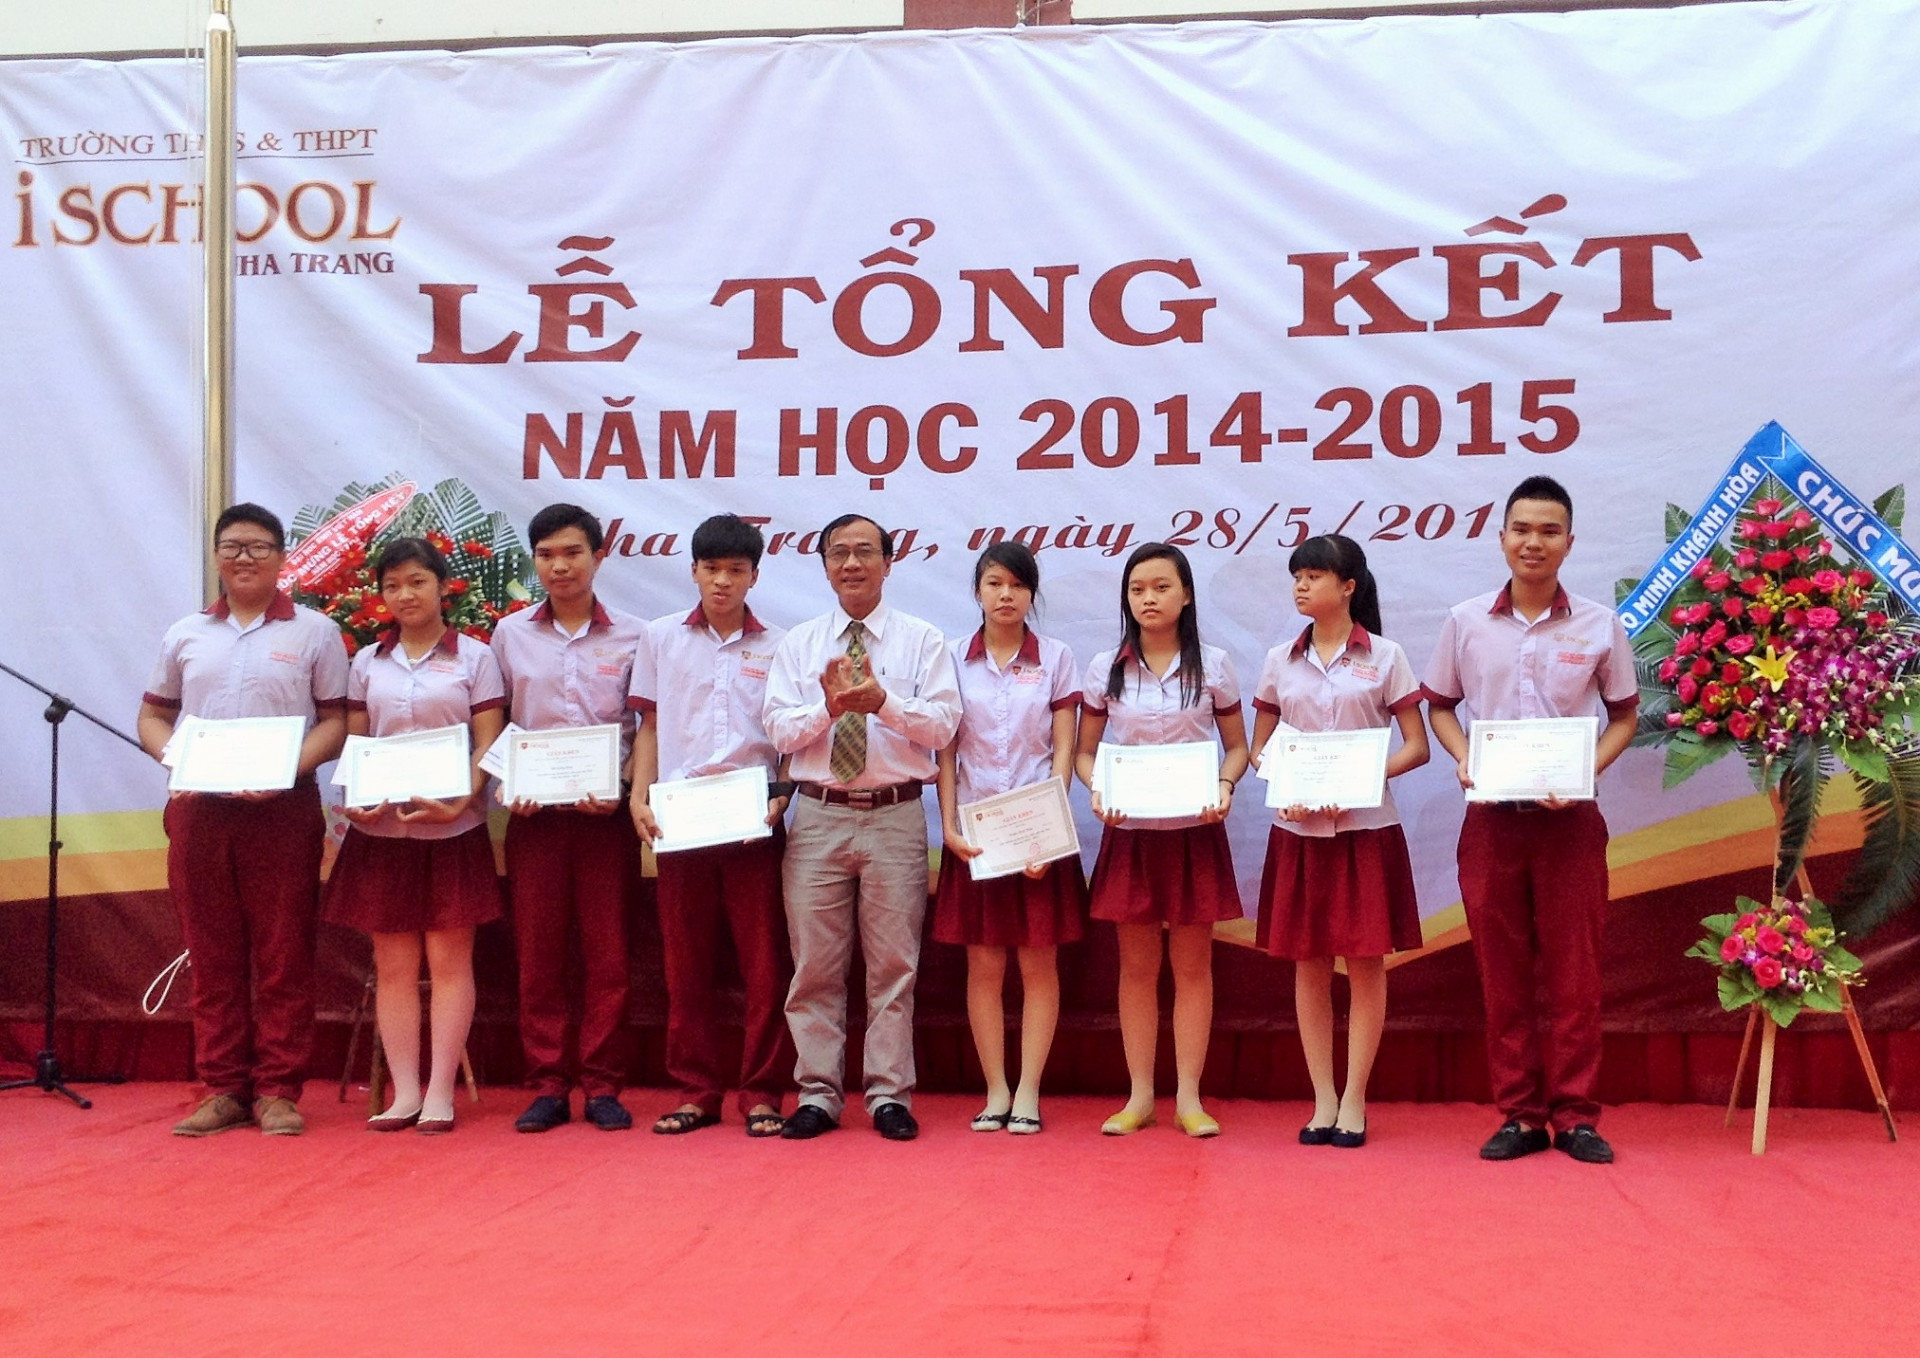 Ông Phan Văn Dũng, Phó Giám đốc Sở Giáo dục và Đào tạo tỉnh trao giấy khen của trường cho các HS đạt giải trong kỳ thi HS giỏi cấp tỉnh. 